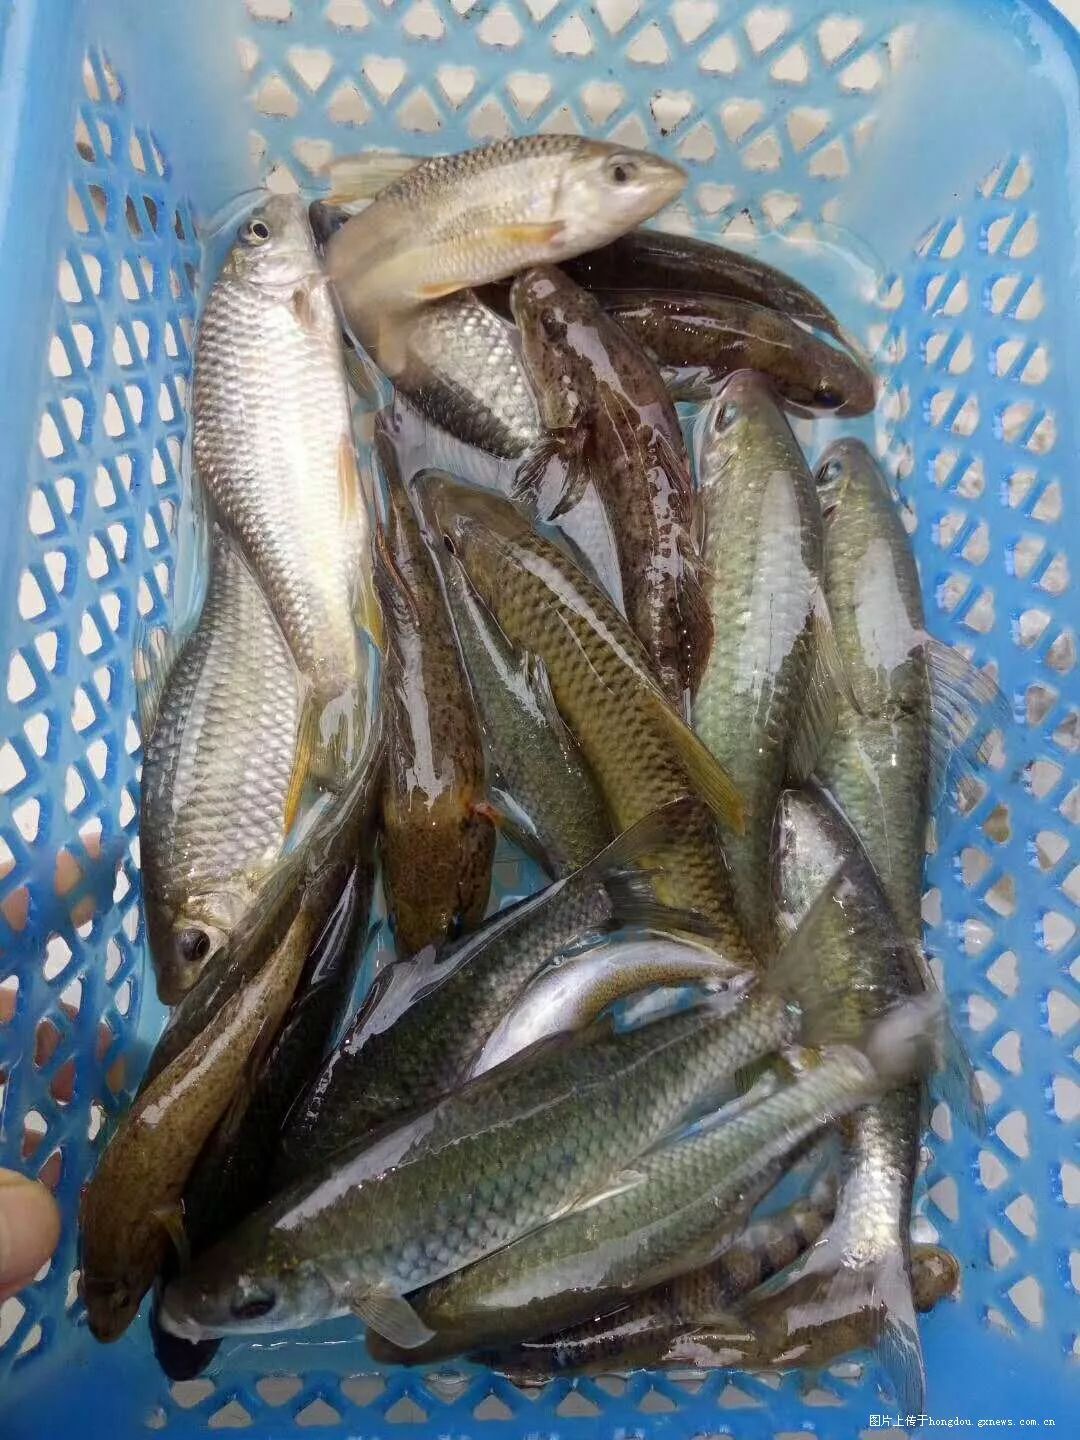 红水河的野生鱼类越来越多,你认得出这些野生鱼吗?